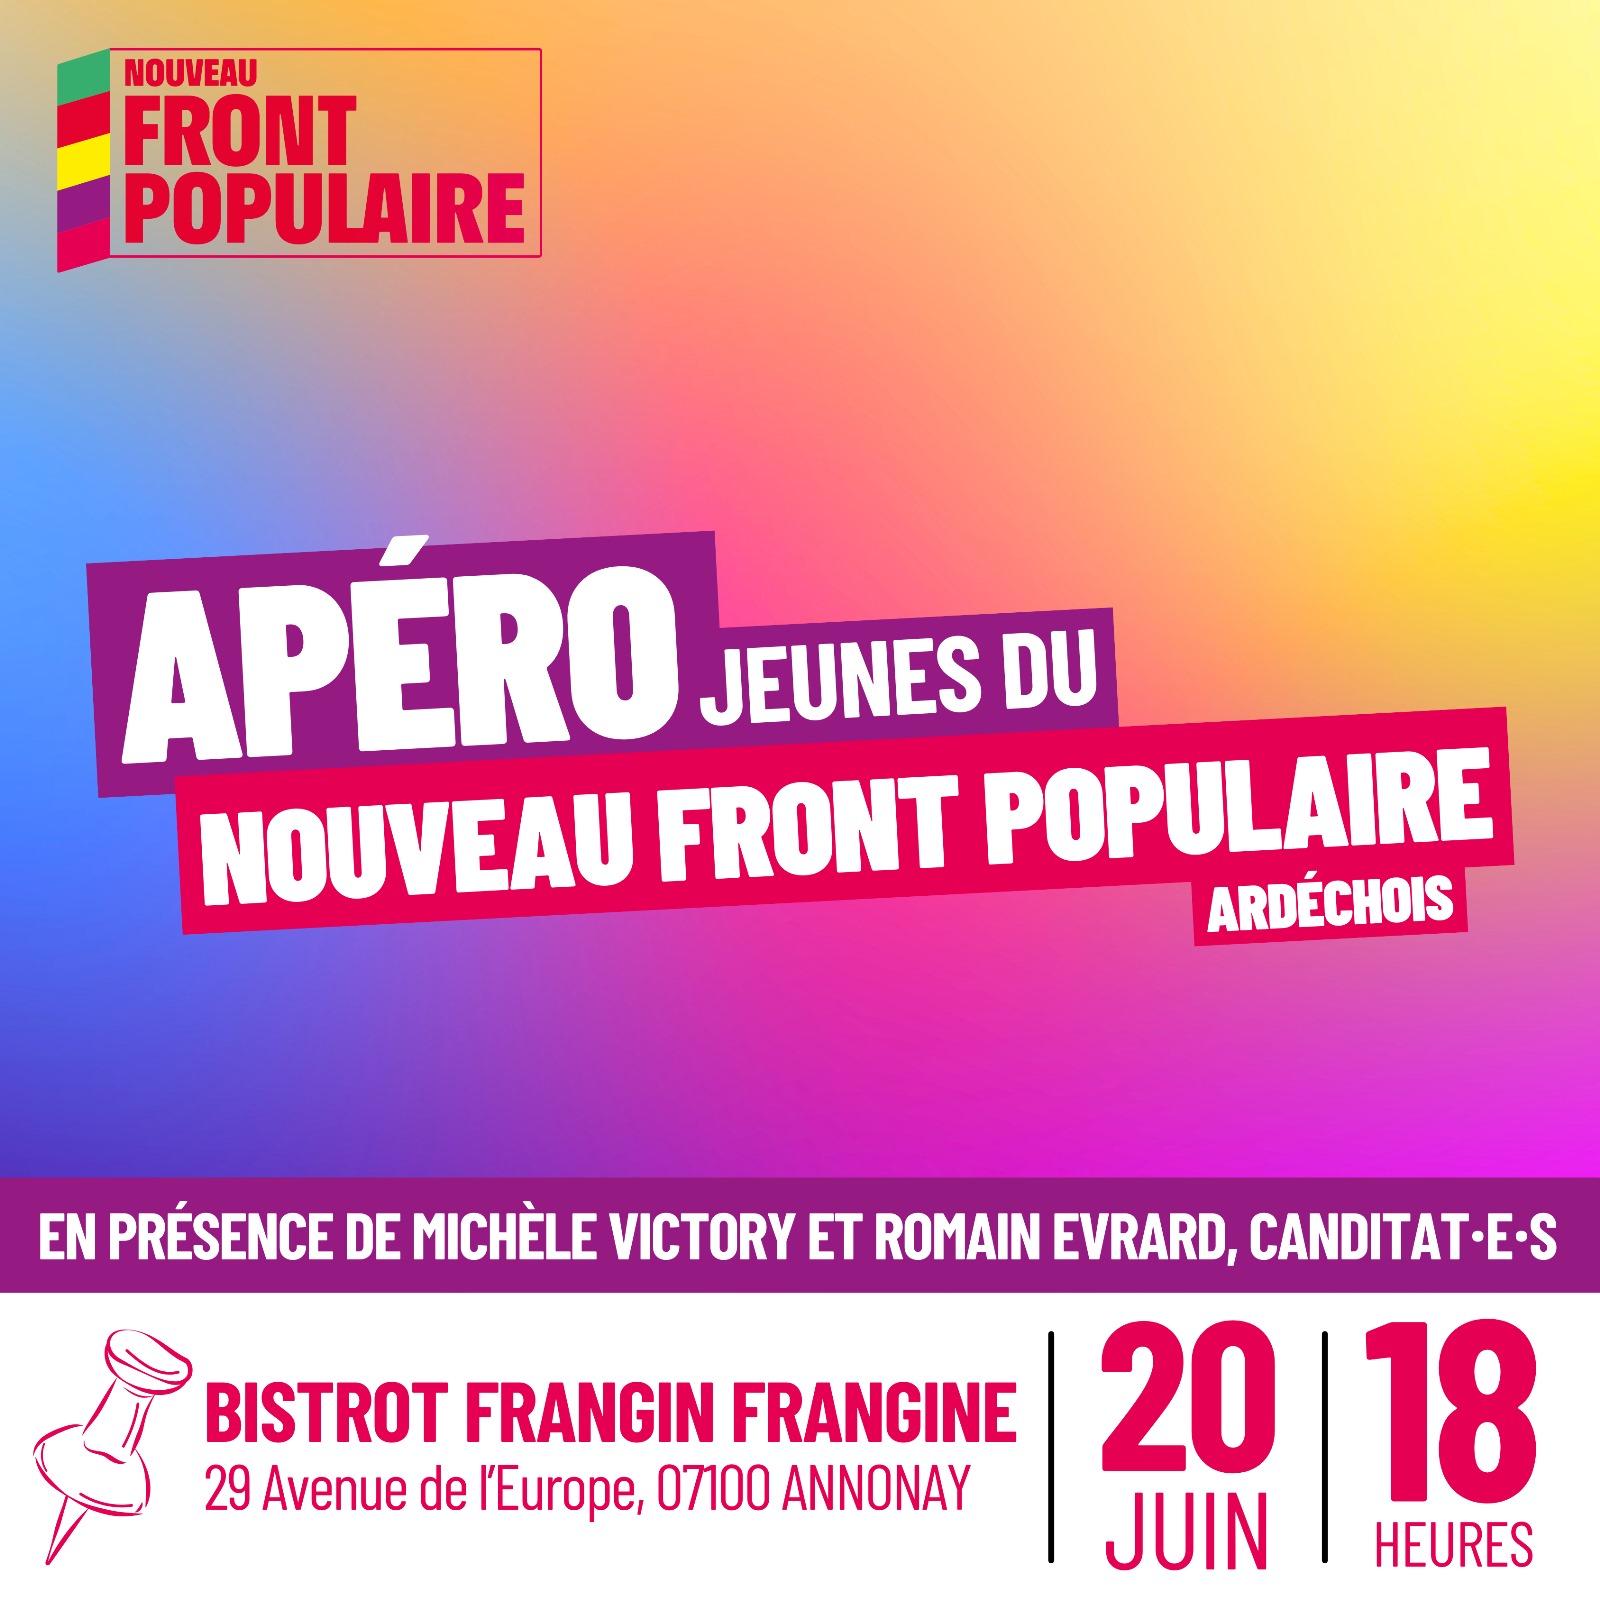 Apéro Jeunes du Nouveau Front Populaire Ardéchois, le 20 juin à 18h à Annonay, bistro Frangin Frangine, 29 avenue de l'Europe